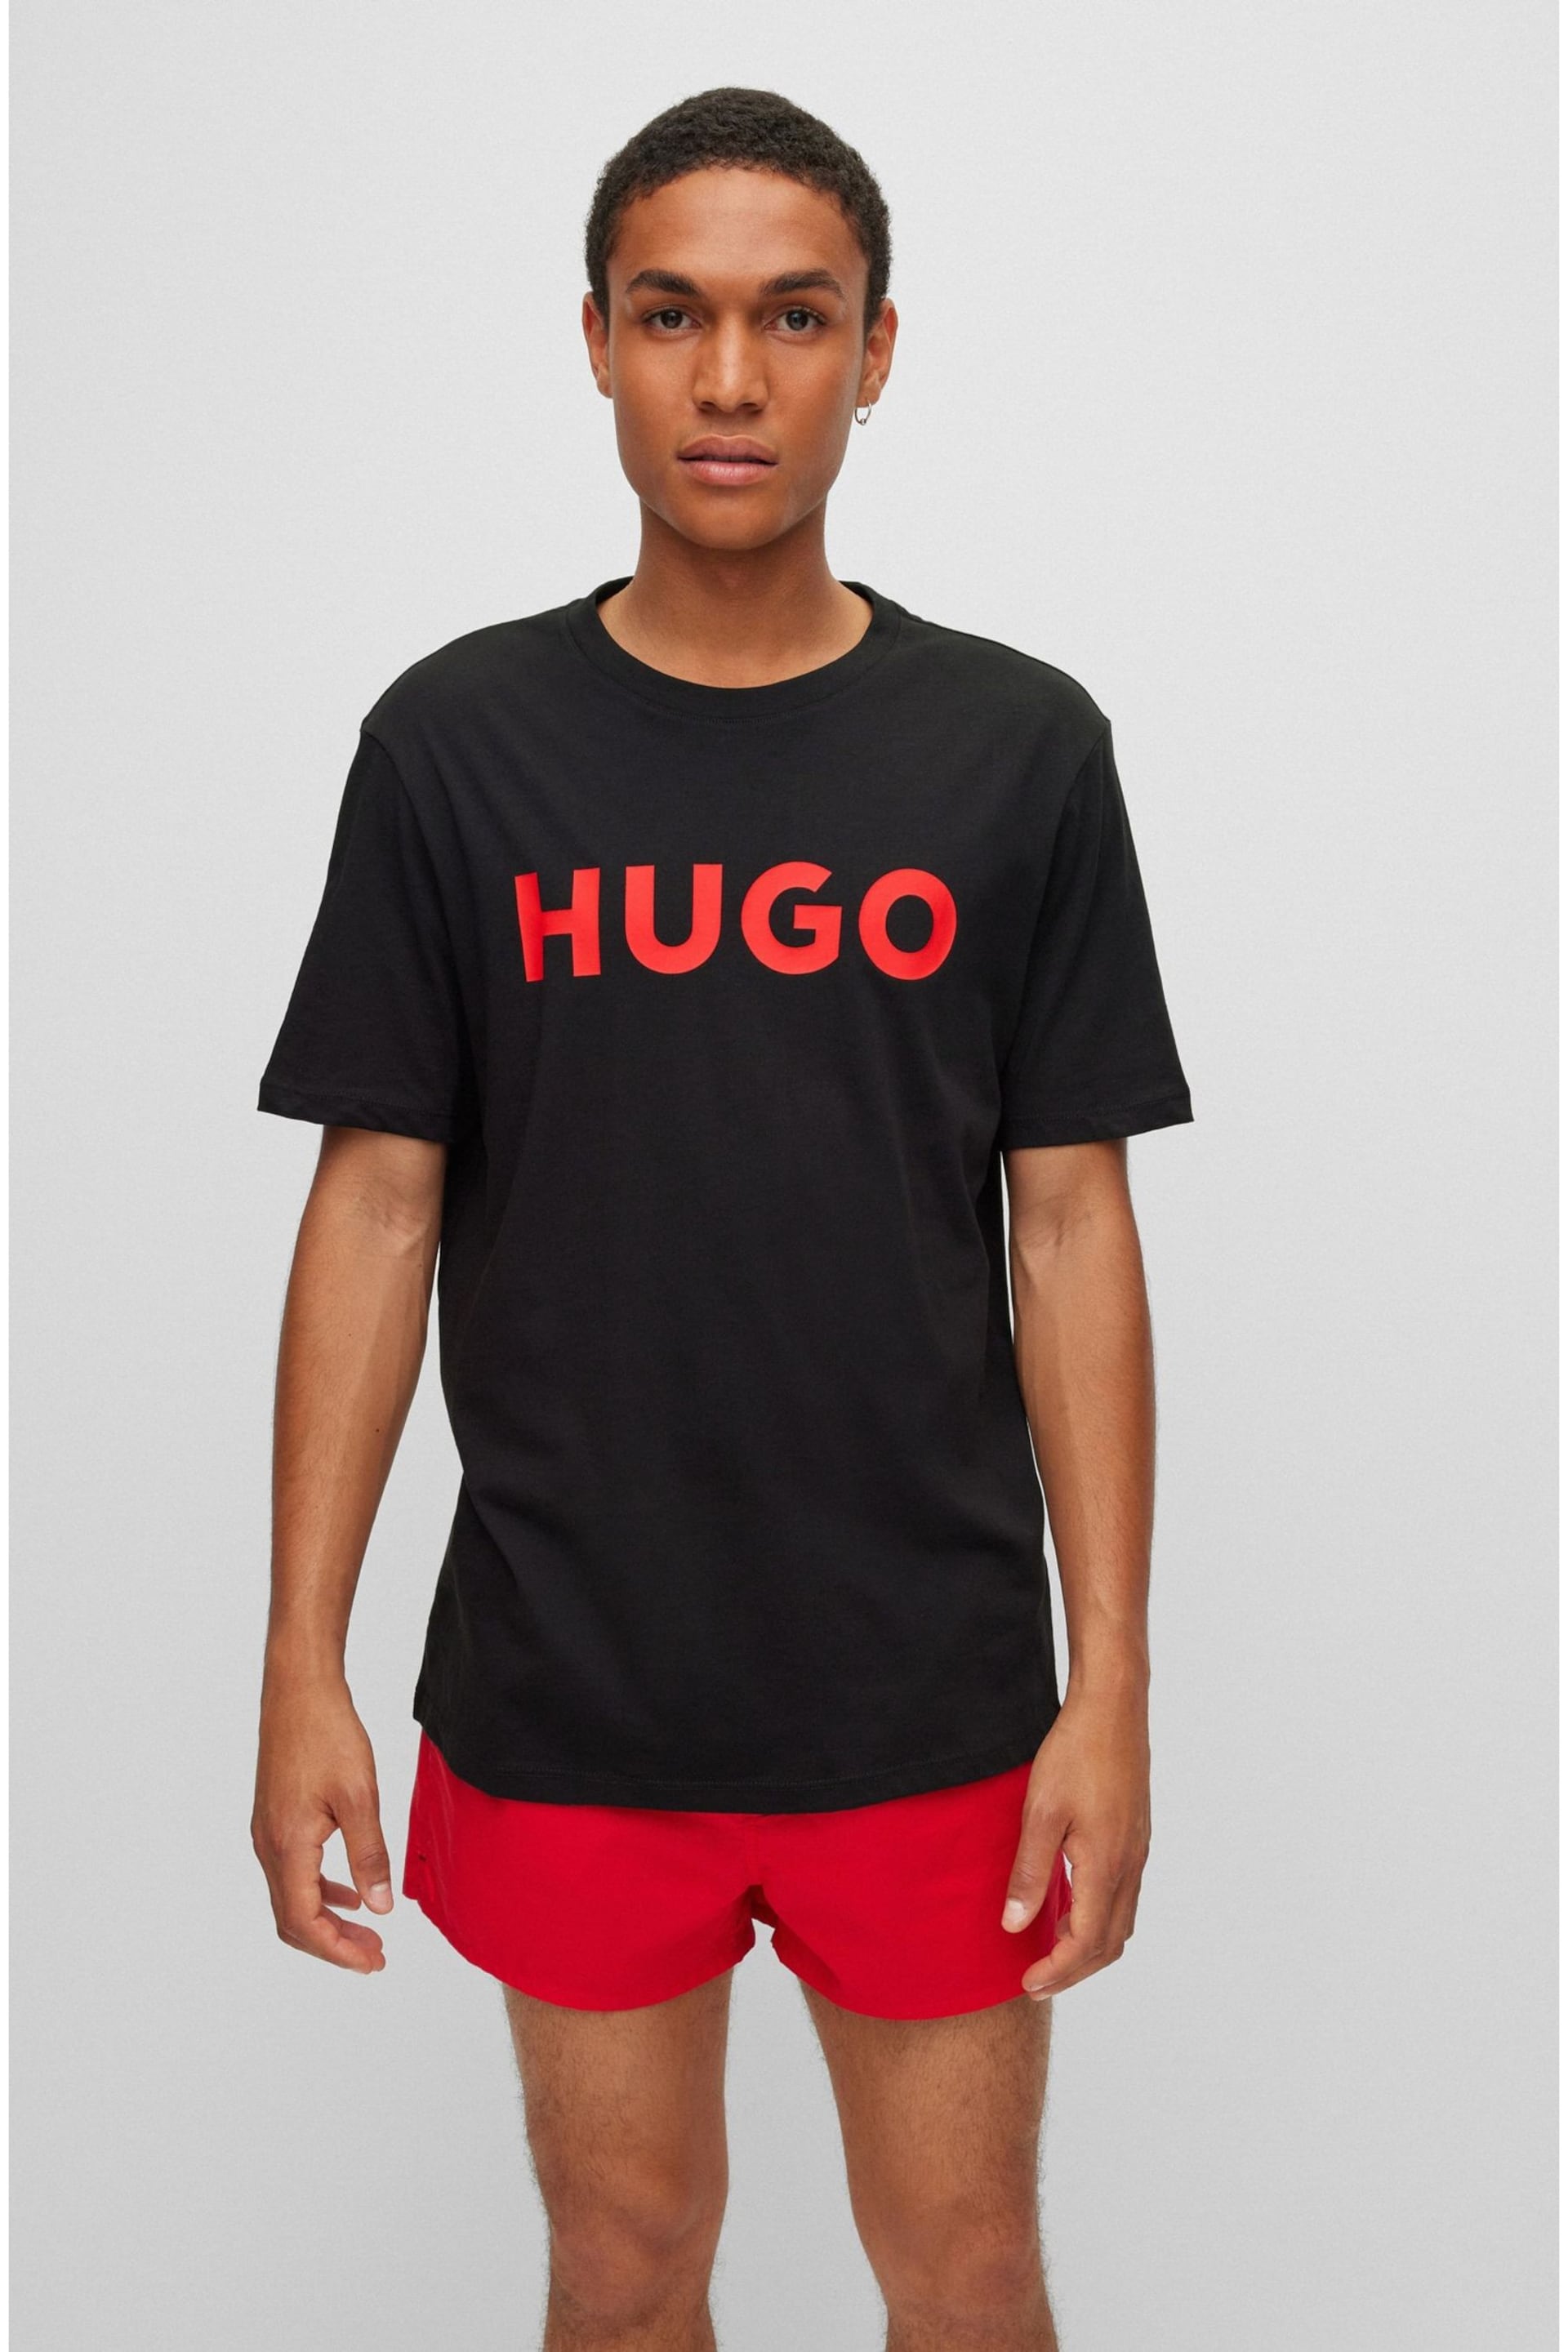 HUGO Large Chest logo T-Shirt - Image 1 of 5